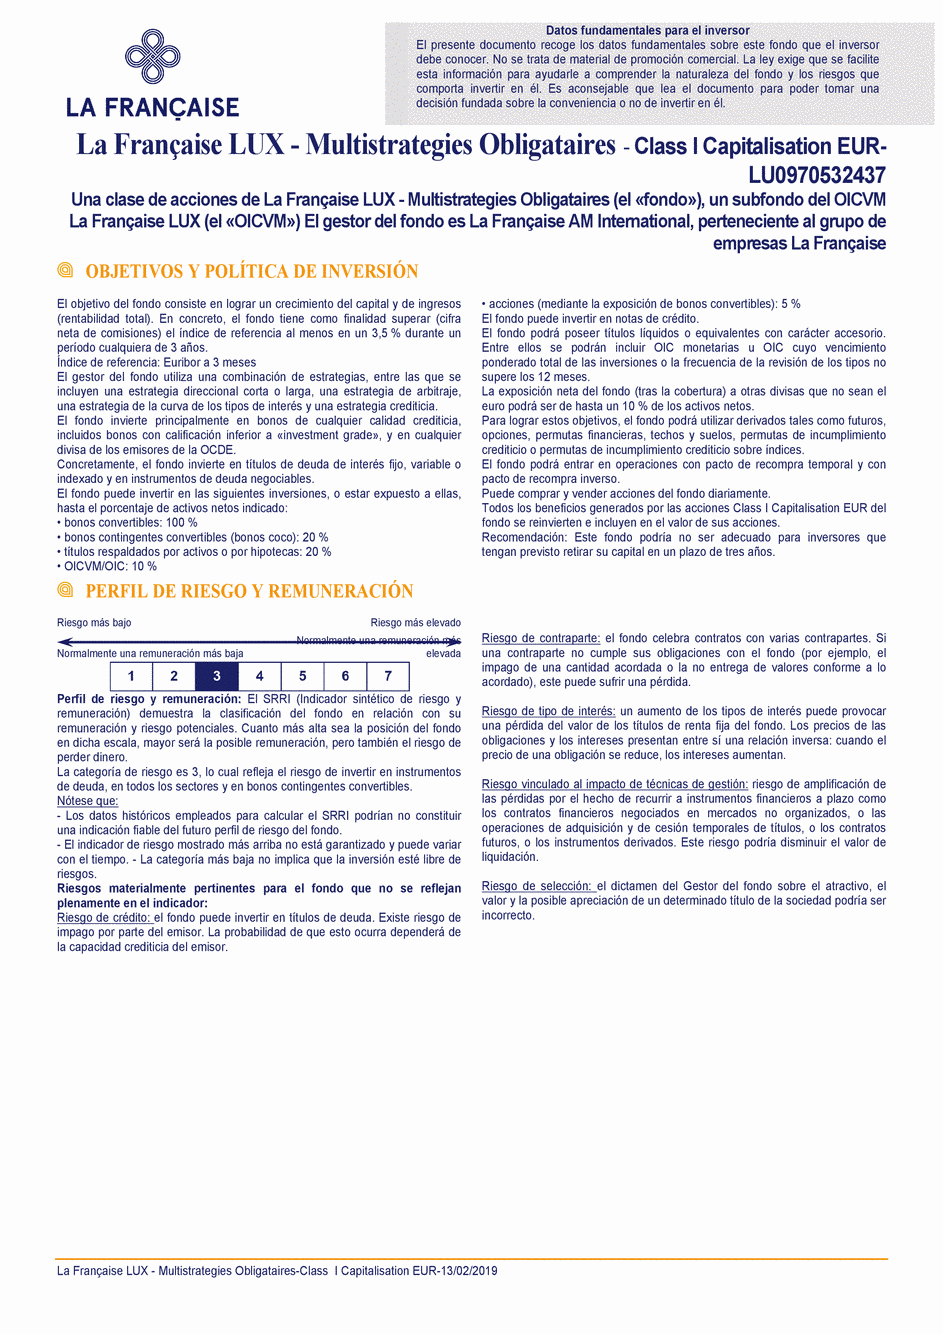 DICI La Française LUX - Multistratégies Obligataires - I (C) EUR - 13/02/2019 - Espagnol